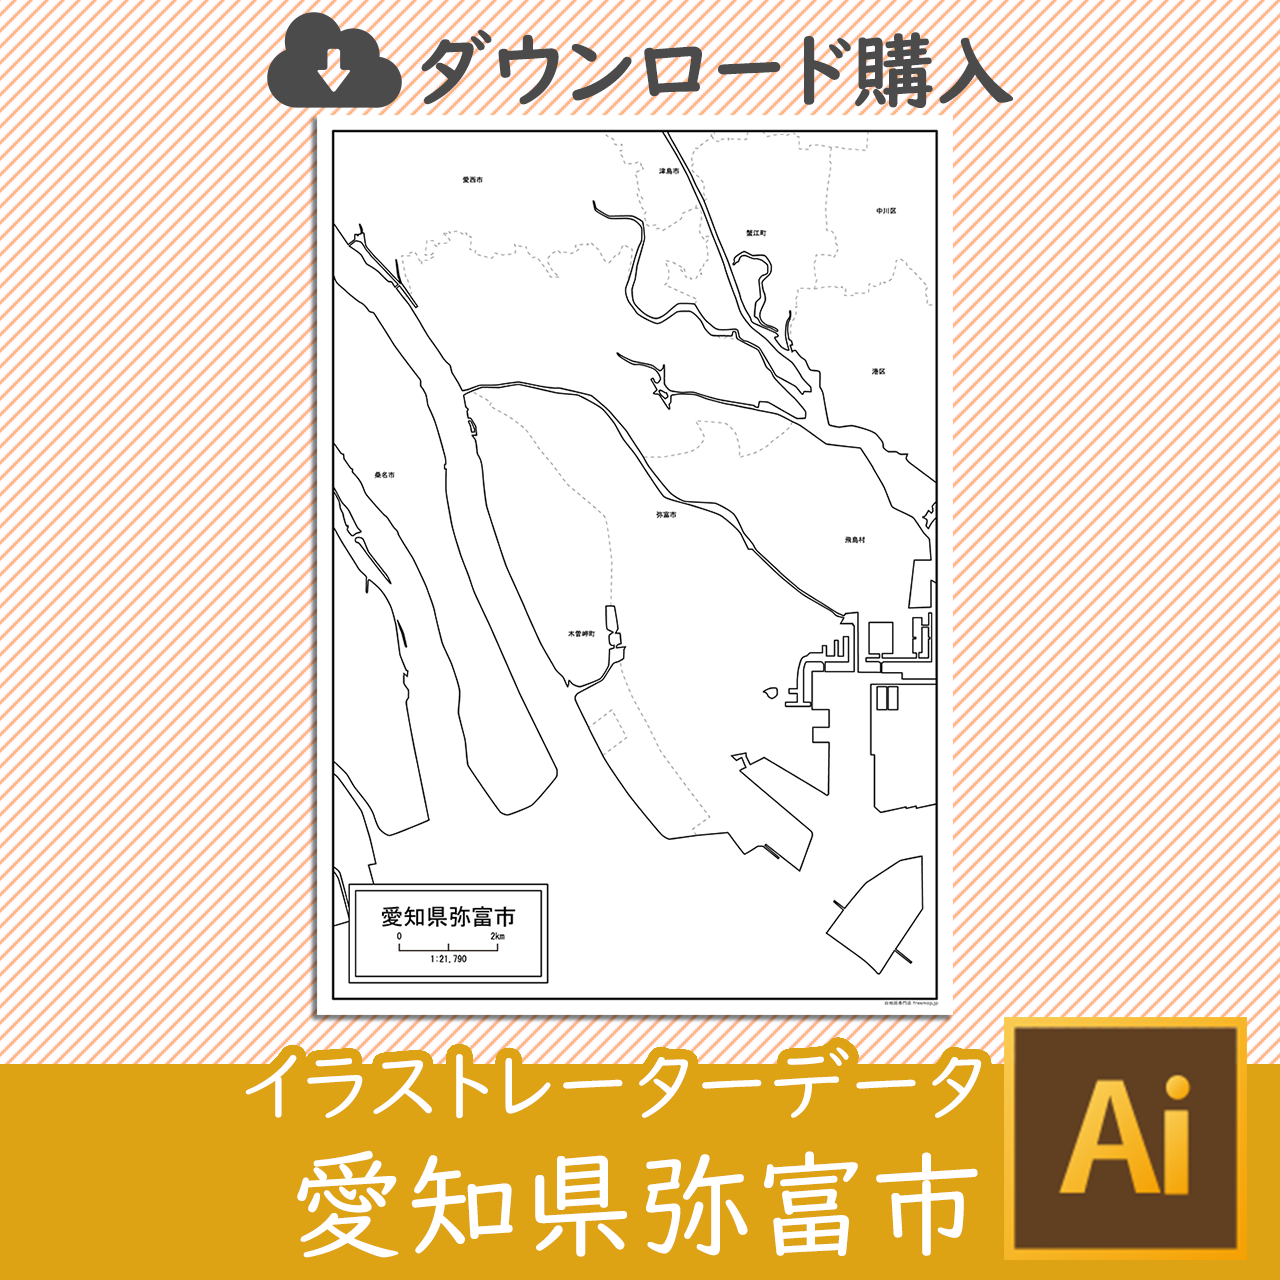 弥富市のaiデータのサムネイル画像